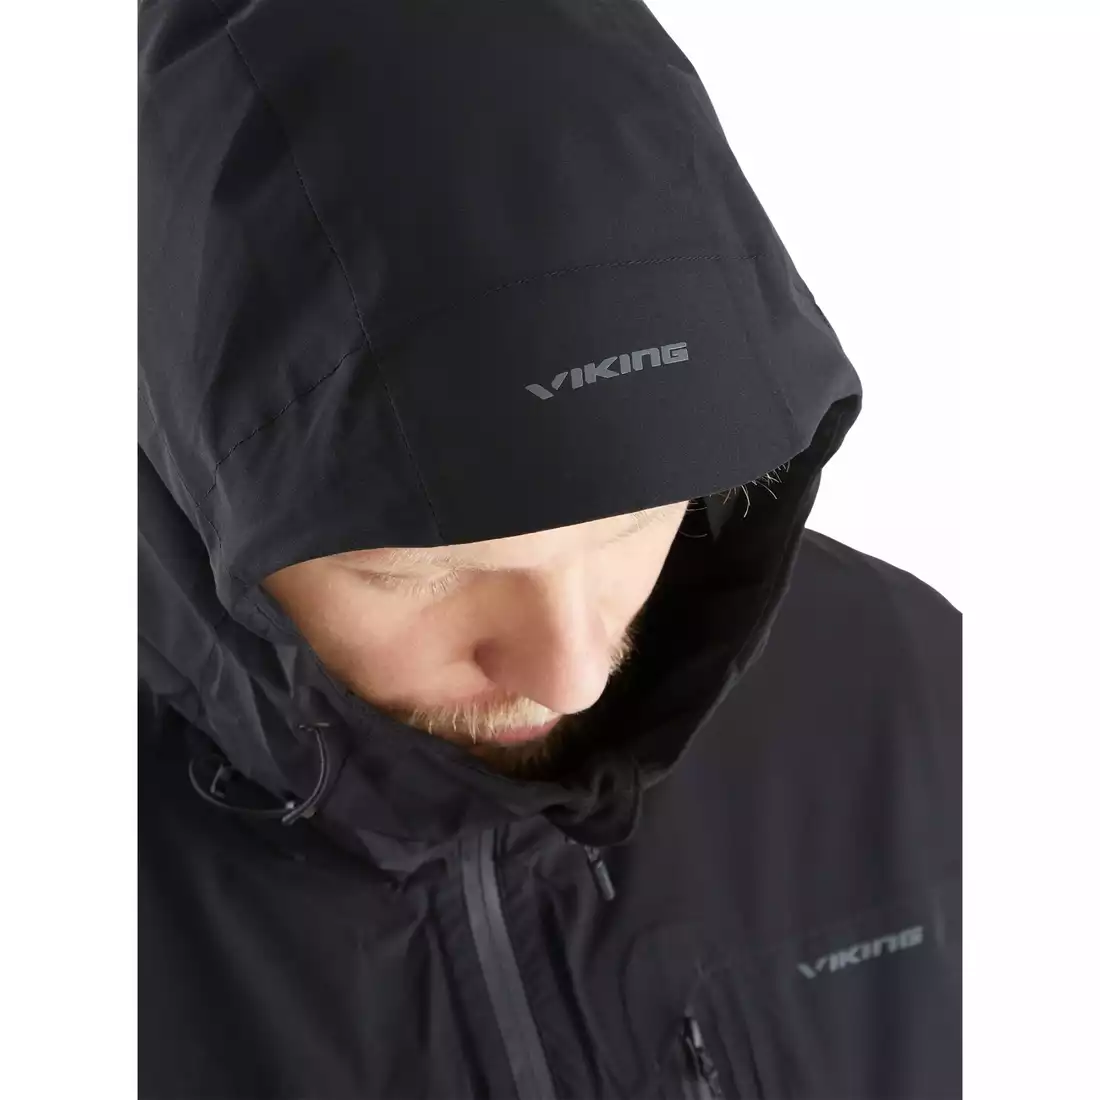 Pánska bunda do dažďa Viking Trek Pro Man 700/23/0905 čierna